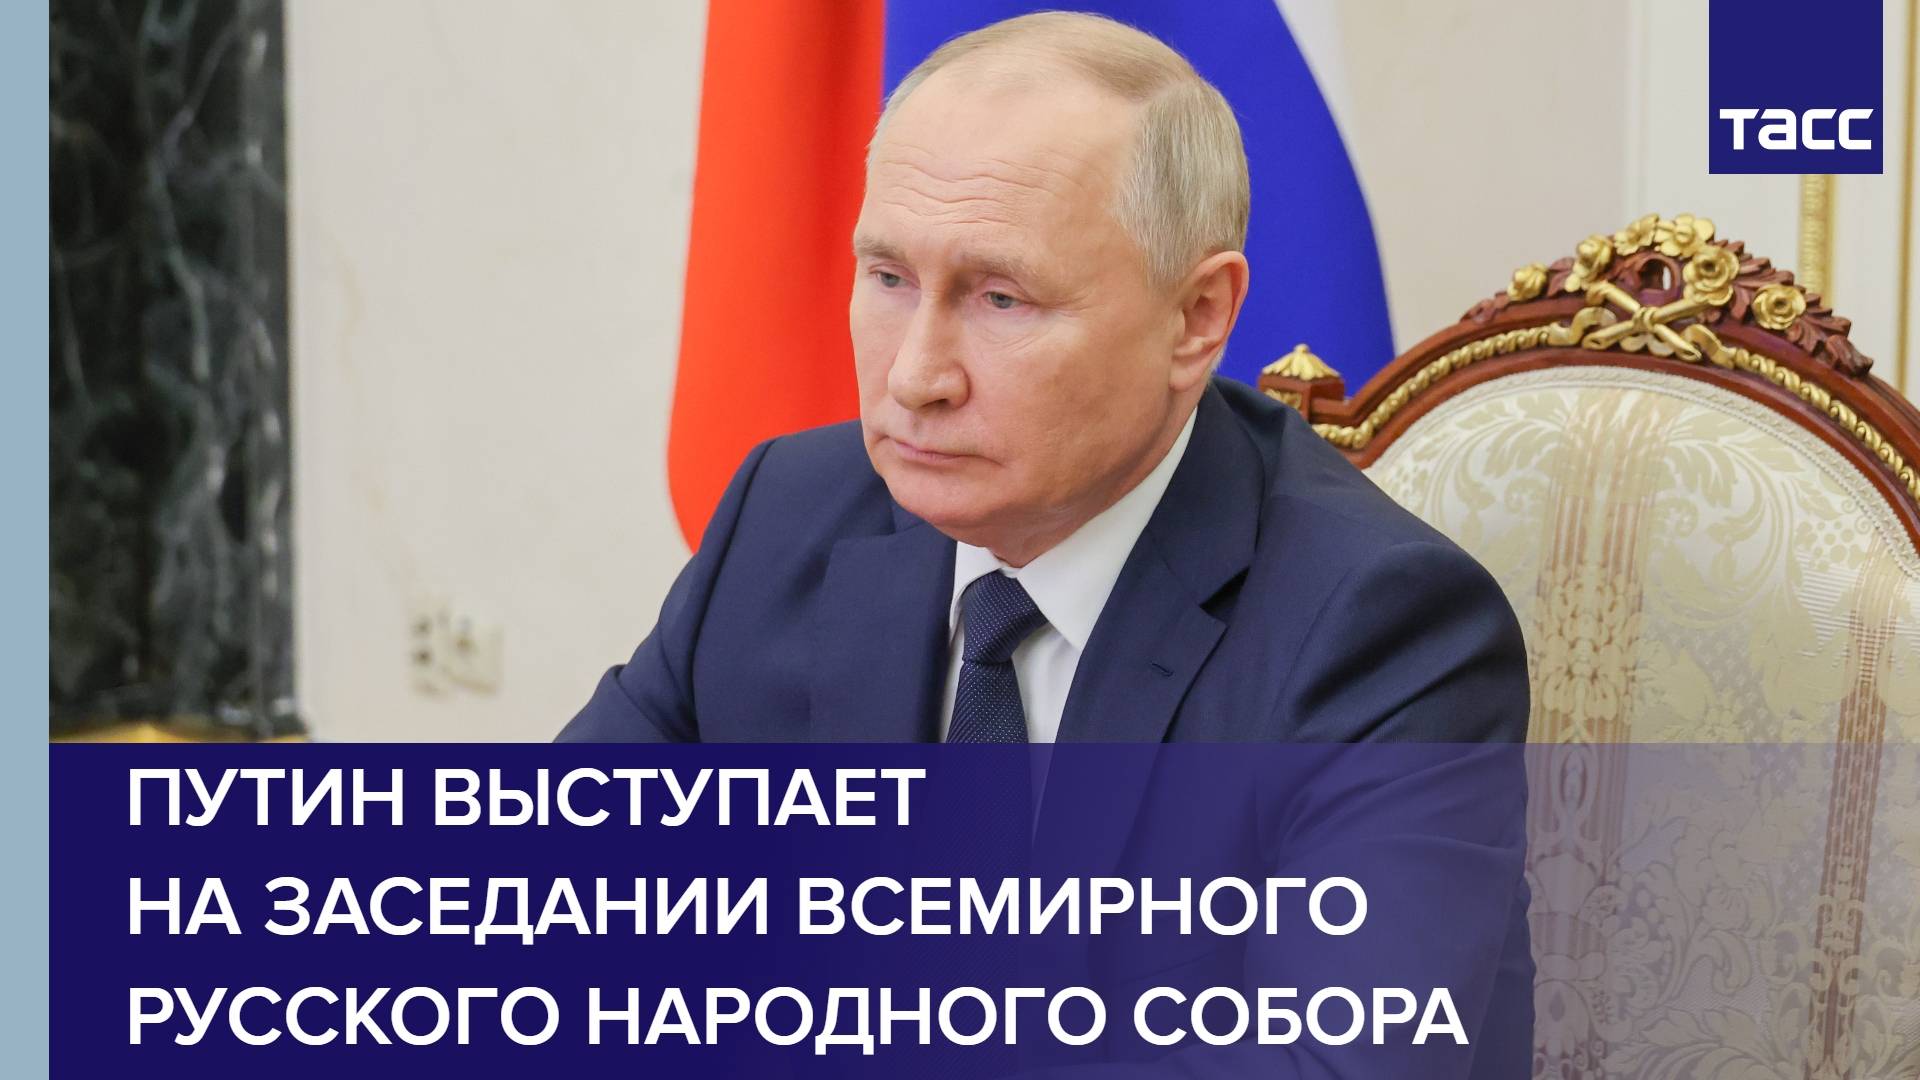 Путин выступает на заседании Всемирного русского народного собора